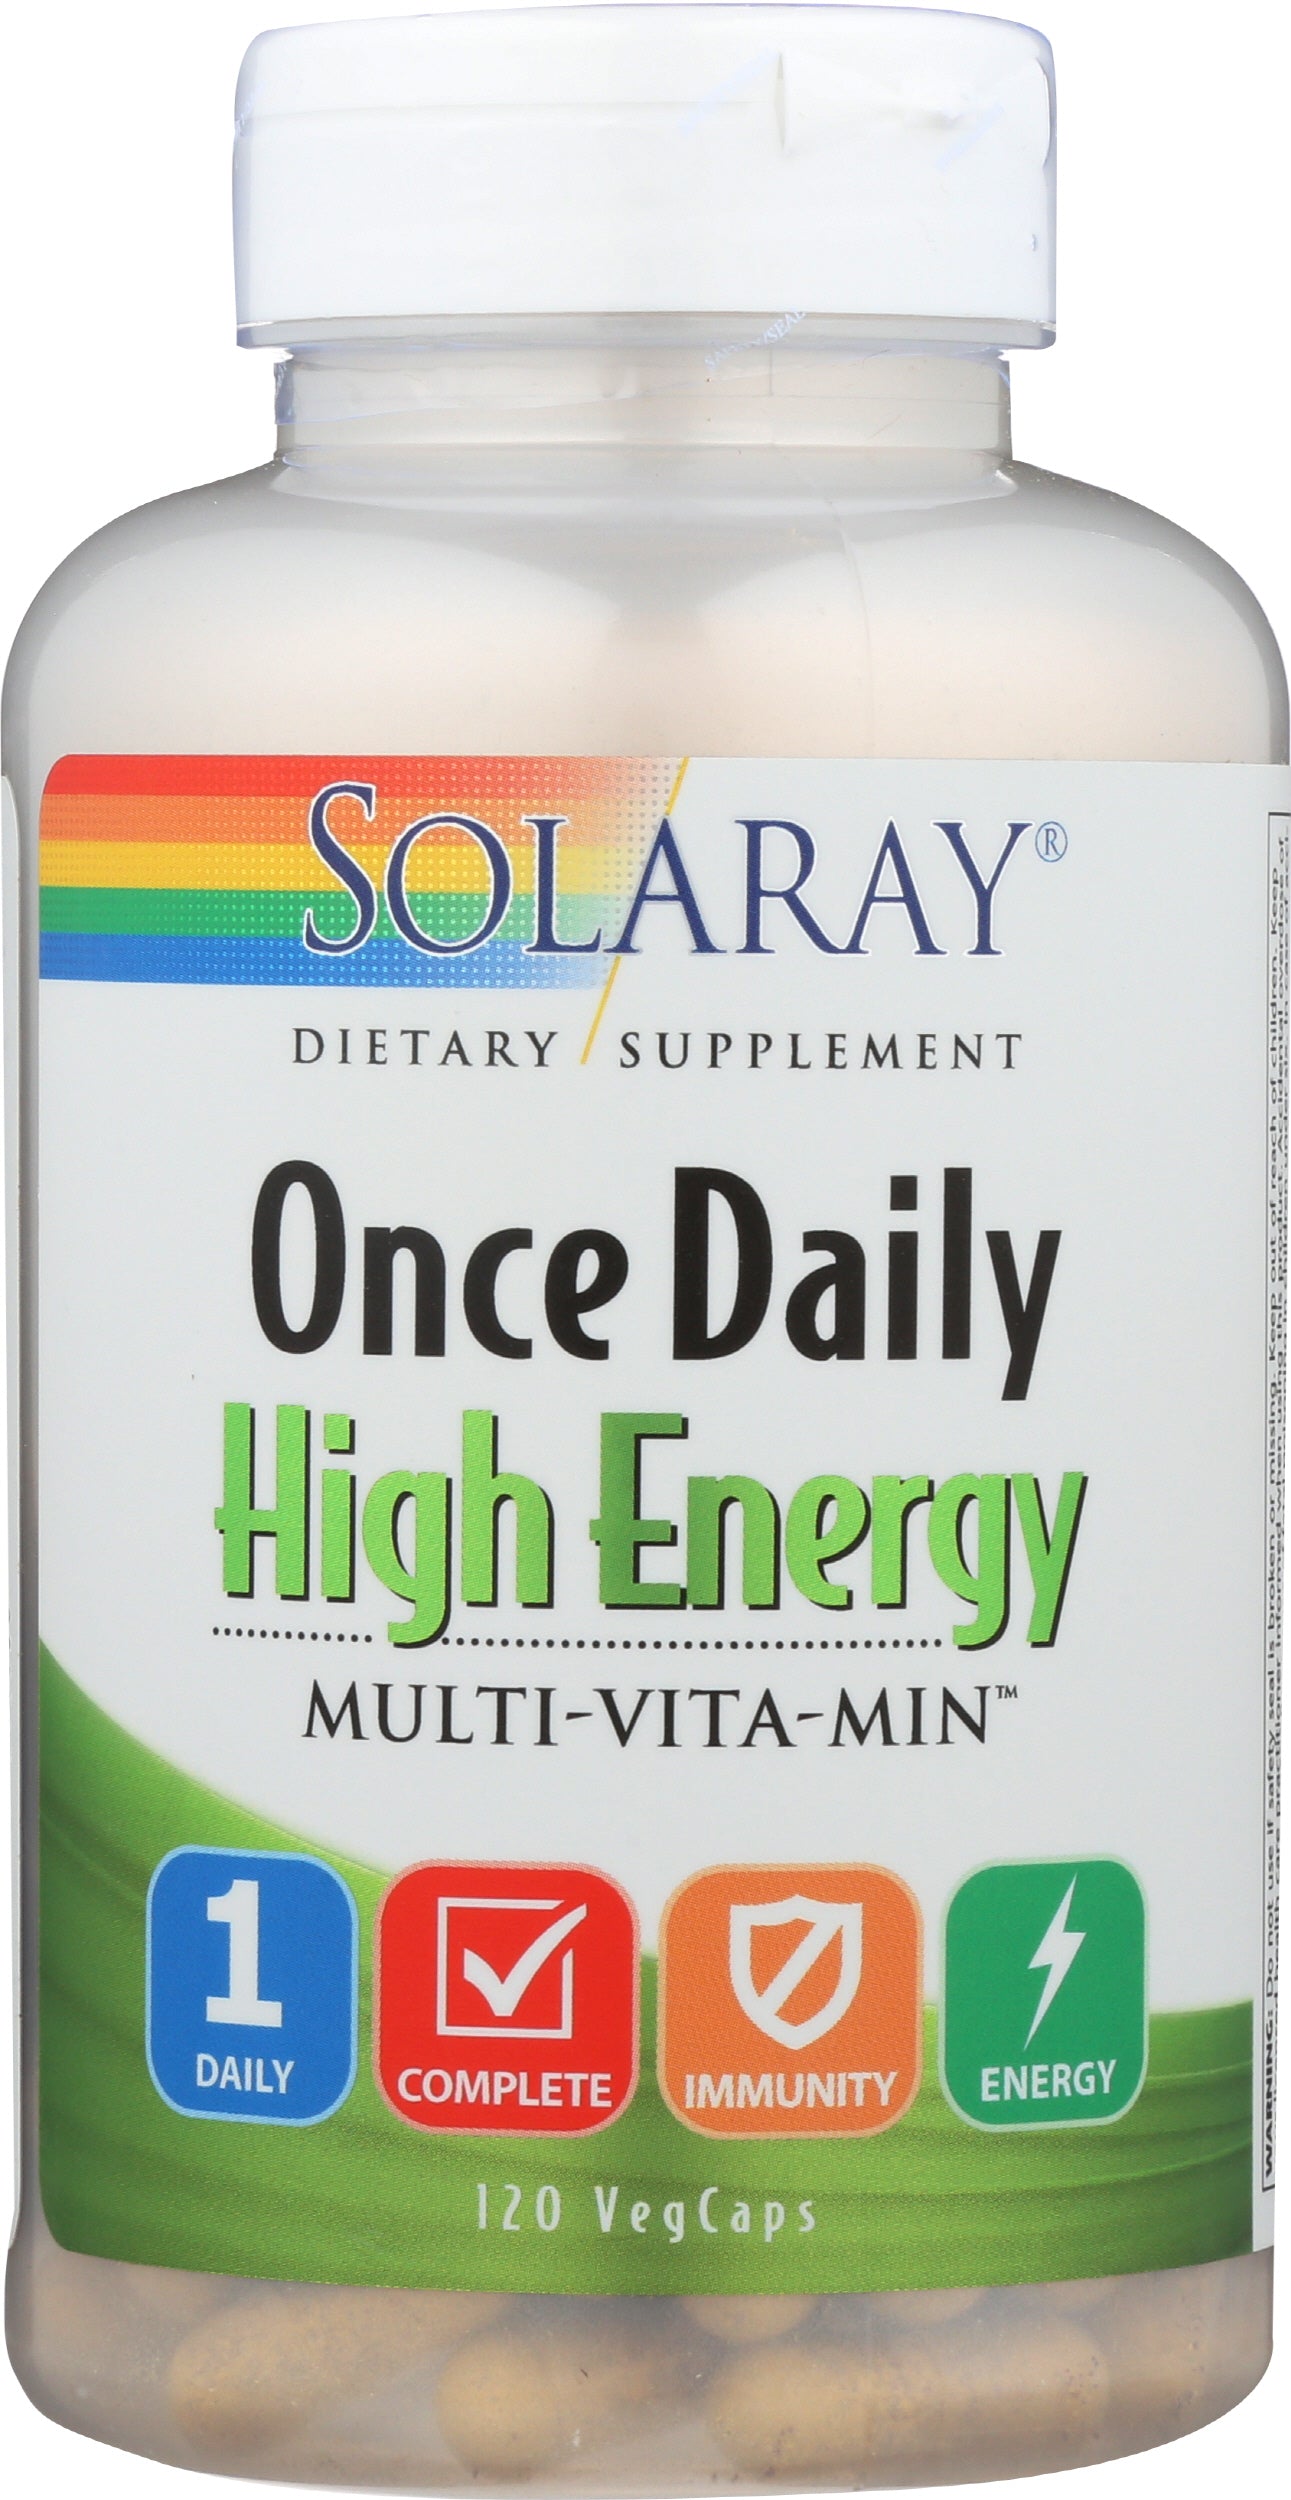 Solaray High Energy Multivitamin 120 VegCaps Front of Bottle